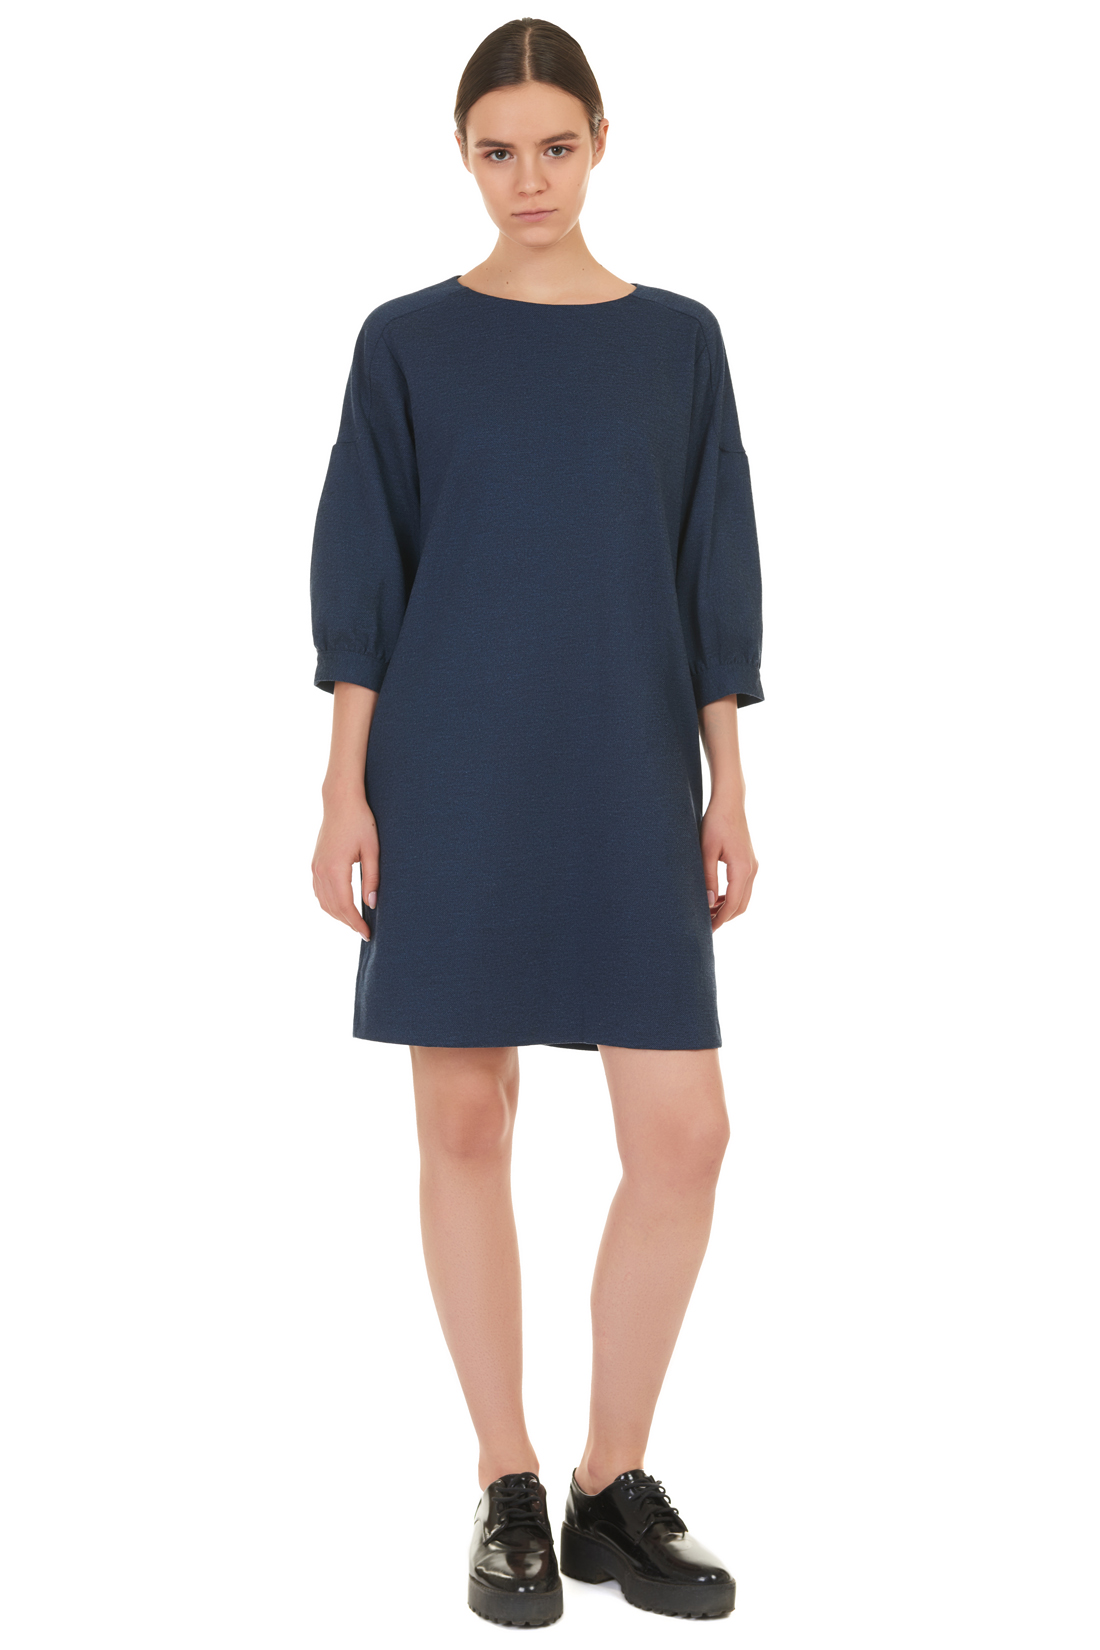 Платье с оригинальными рукавами (арт. baon B457519), размер XXL, цвет blue night melange#синий Платье с оригинальными рукавами (арт. baon B457519) - фото 1